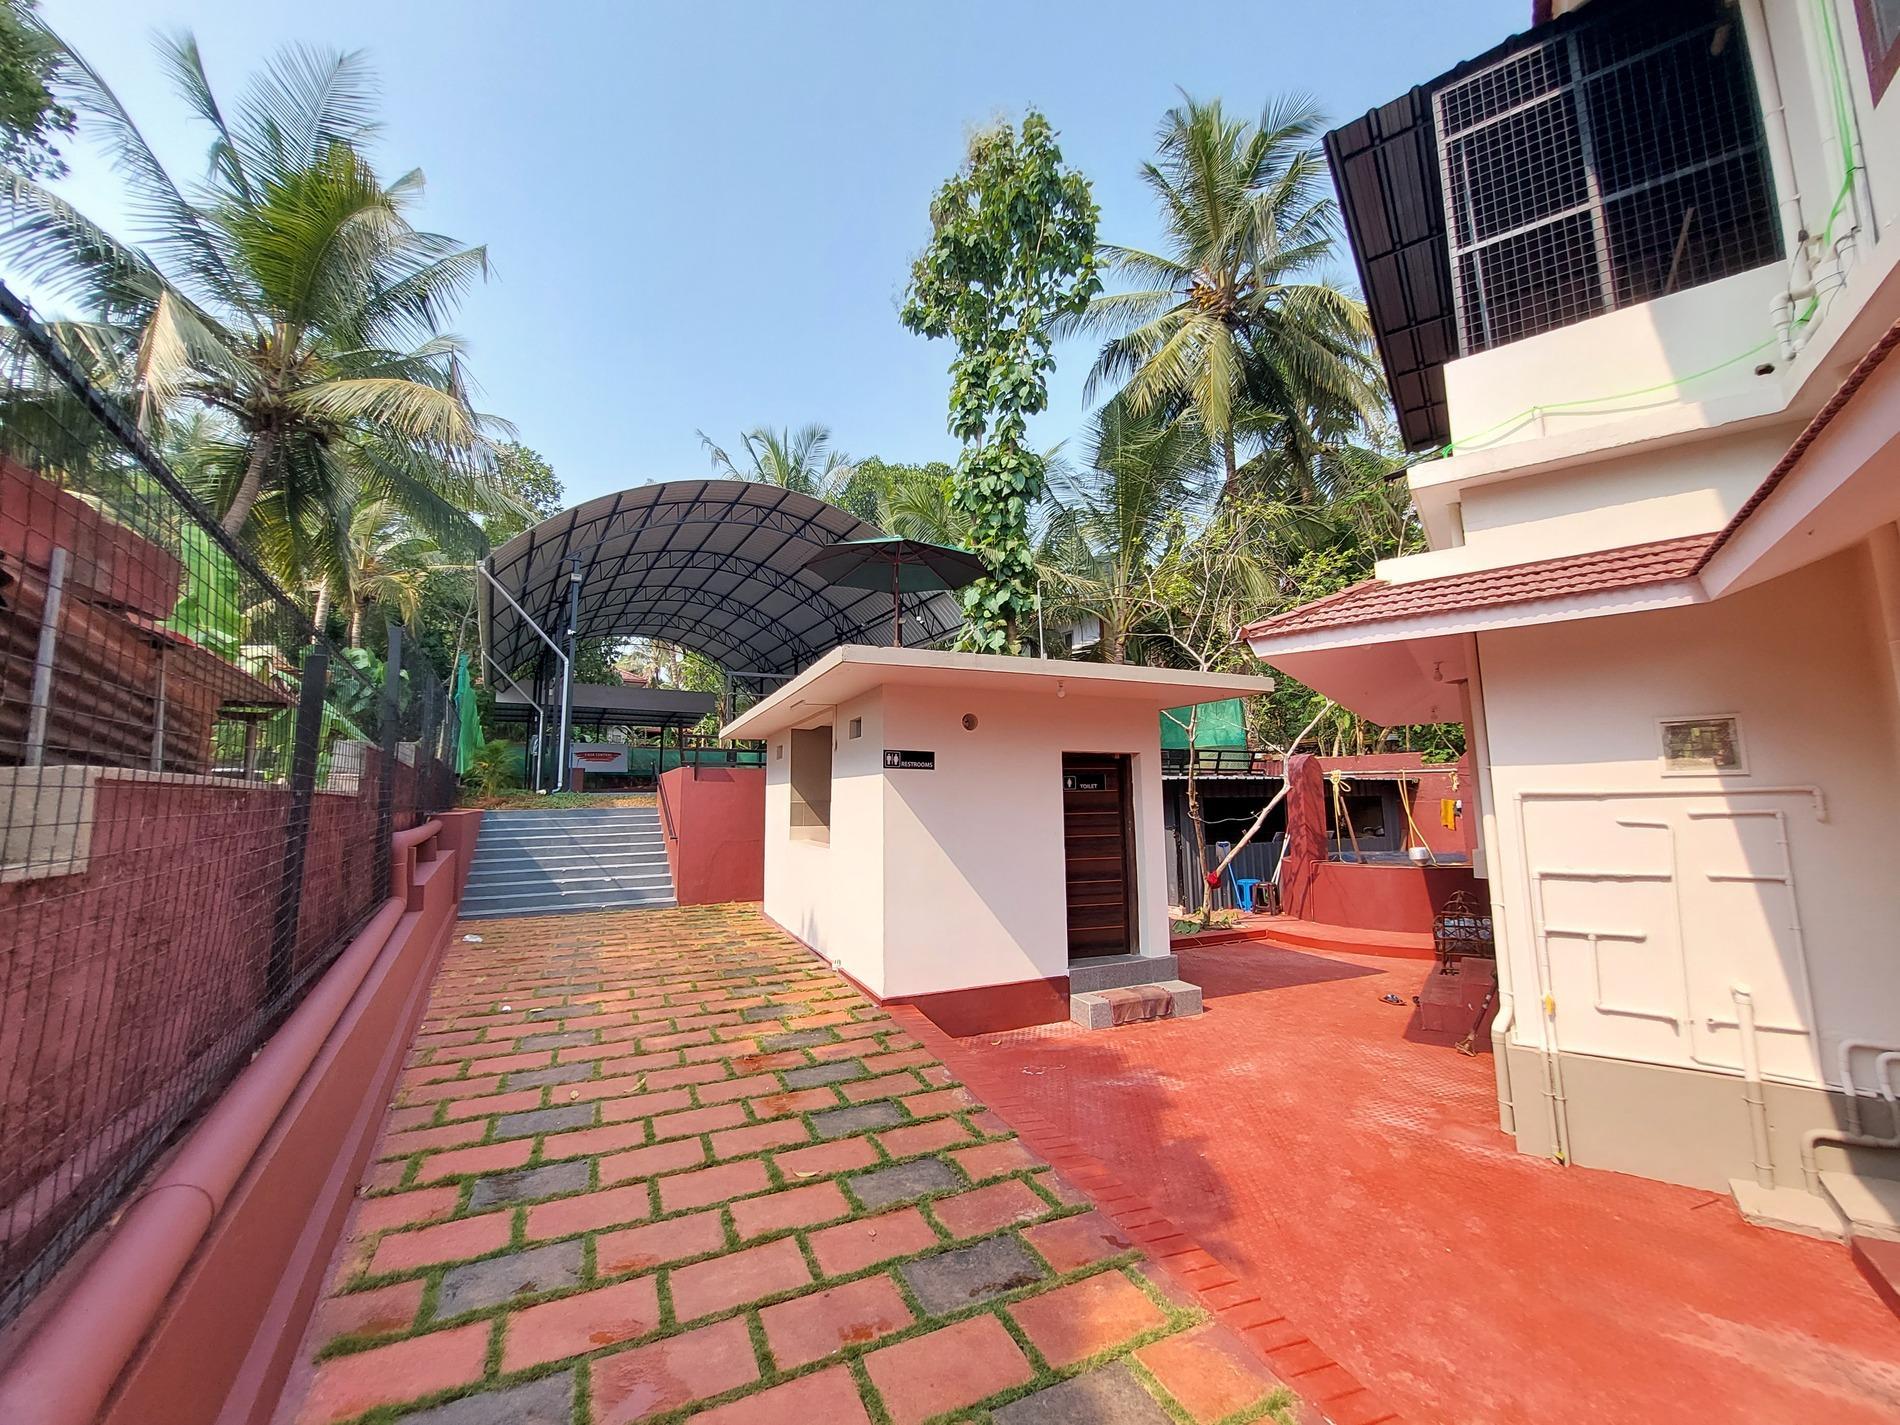 Casa Central Serviced Villa And Amphitheater - Kerala